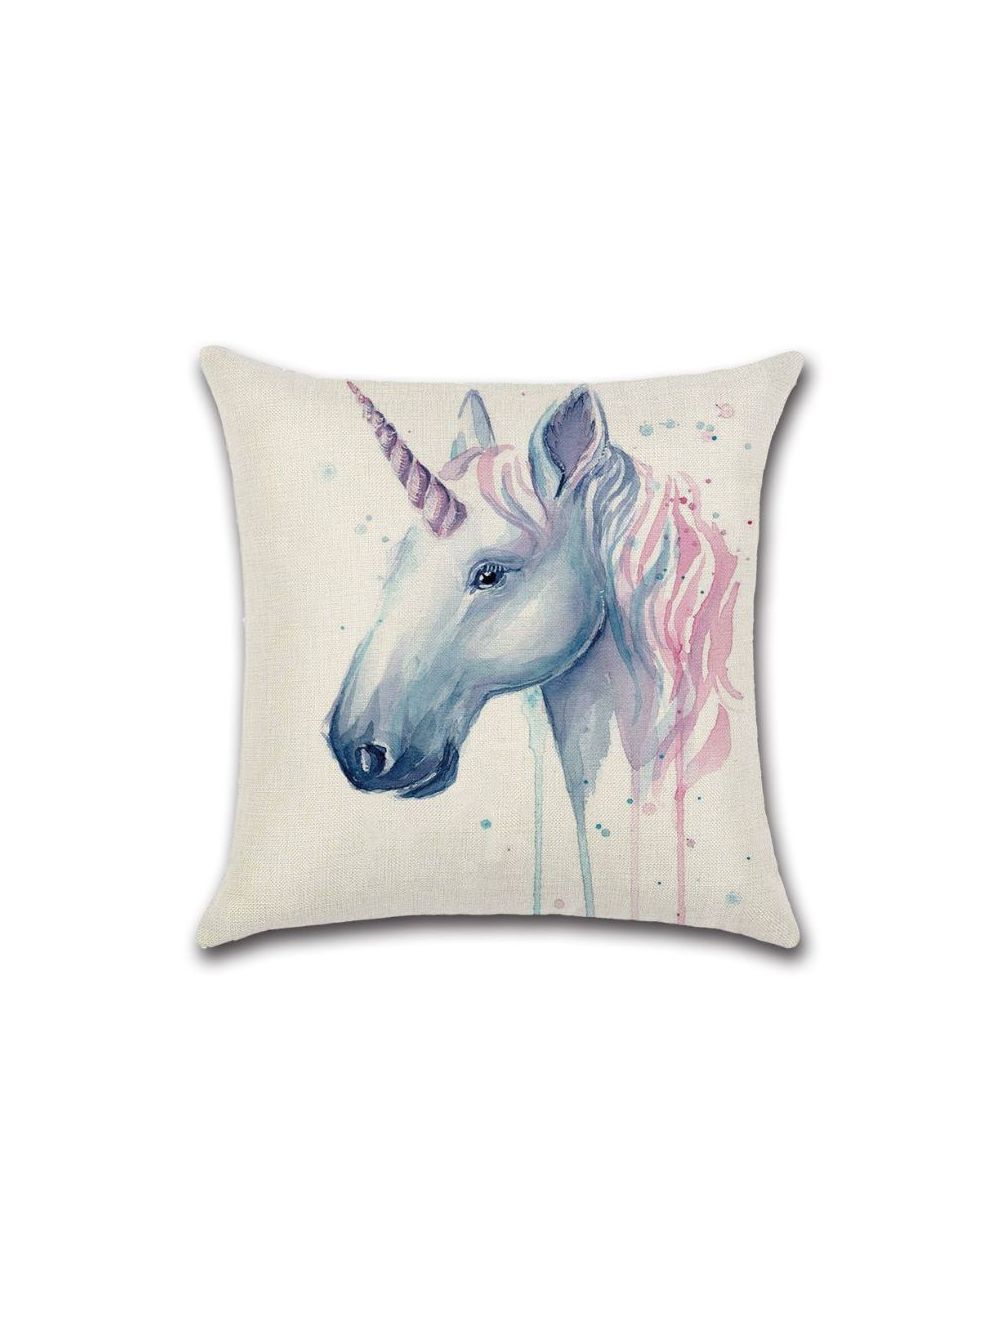 Rishahome Unicorn Printed Cushion Cover 45x45 cm-9C13B0015